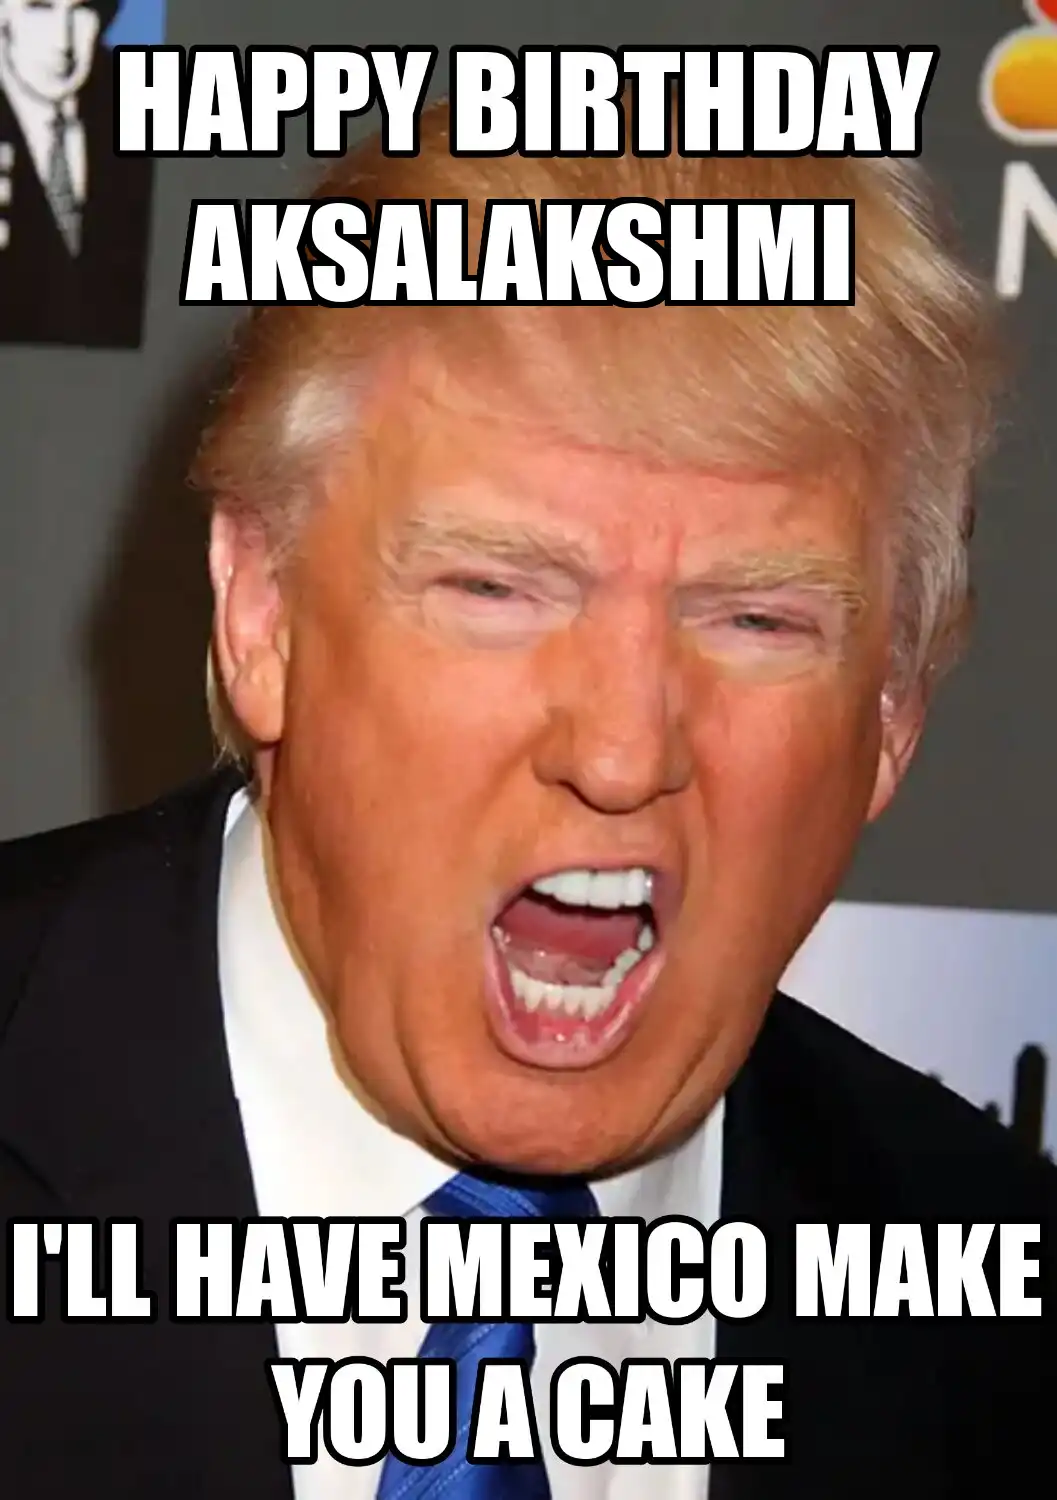 Happy Birthday Aksalakshmi Mexico Make You A Cake Meme